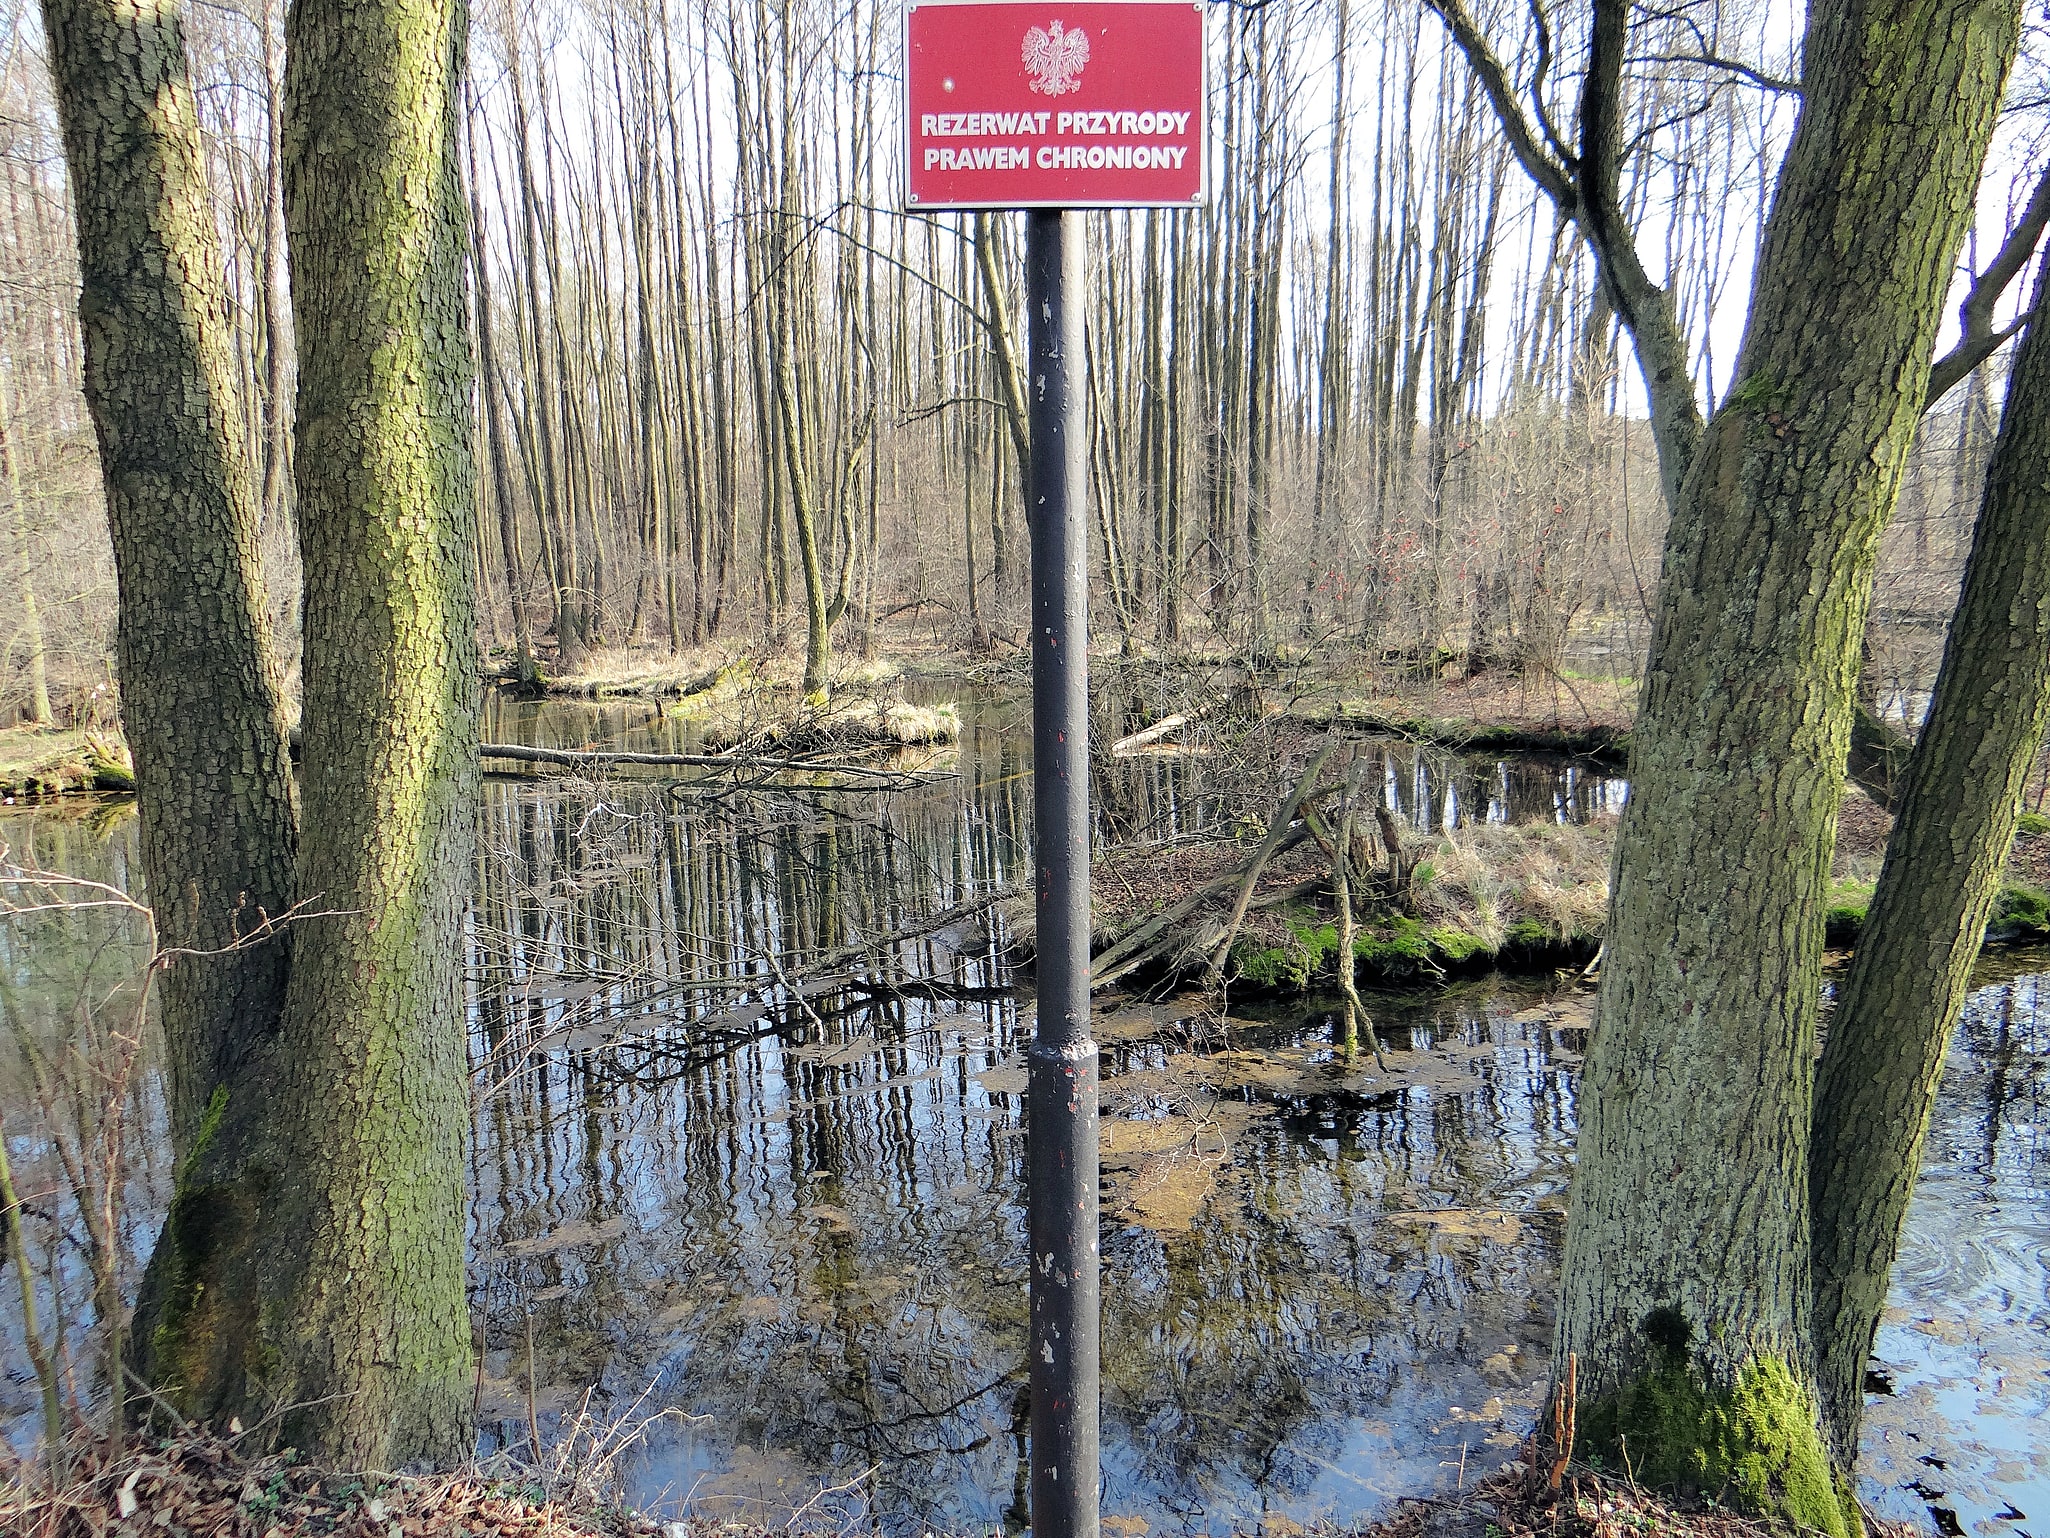 Rezerwat przyrody Niebieskie Źródła, Polska